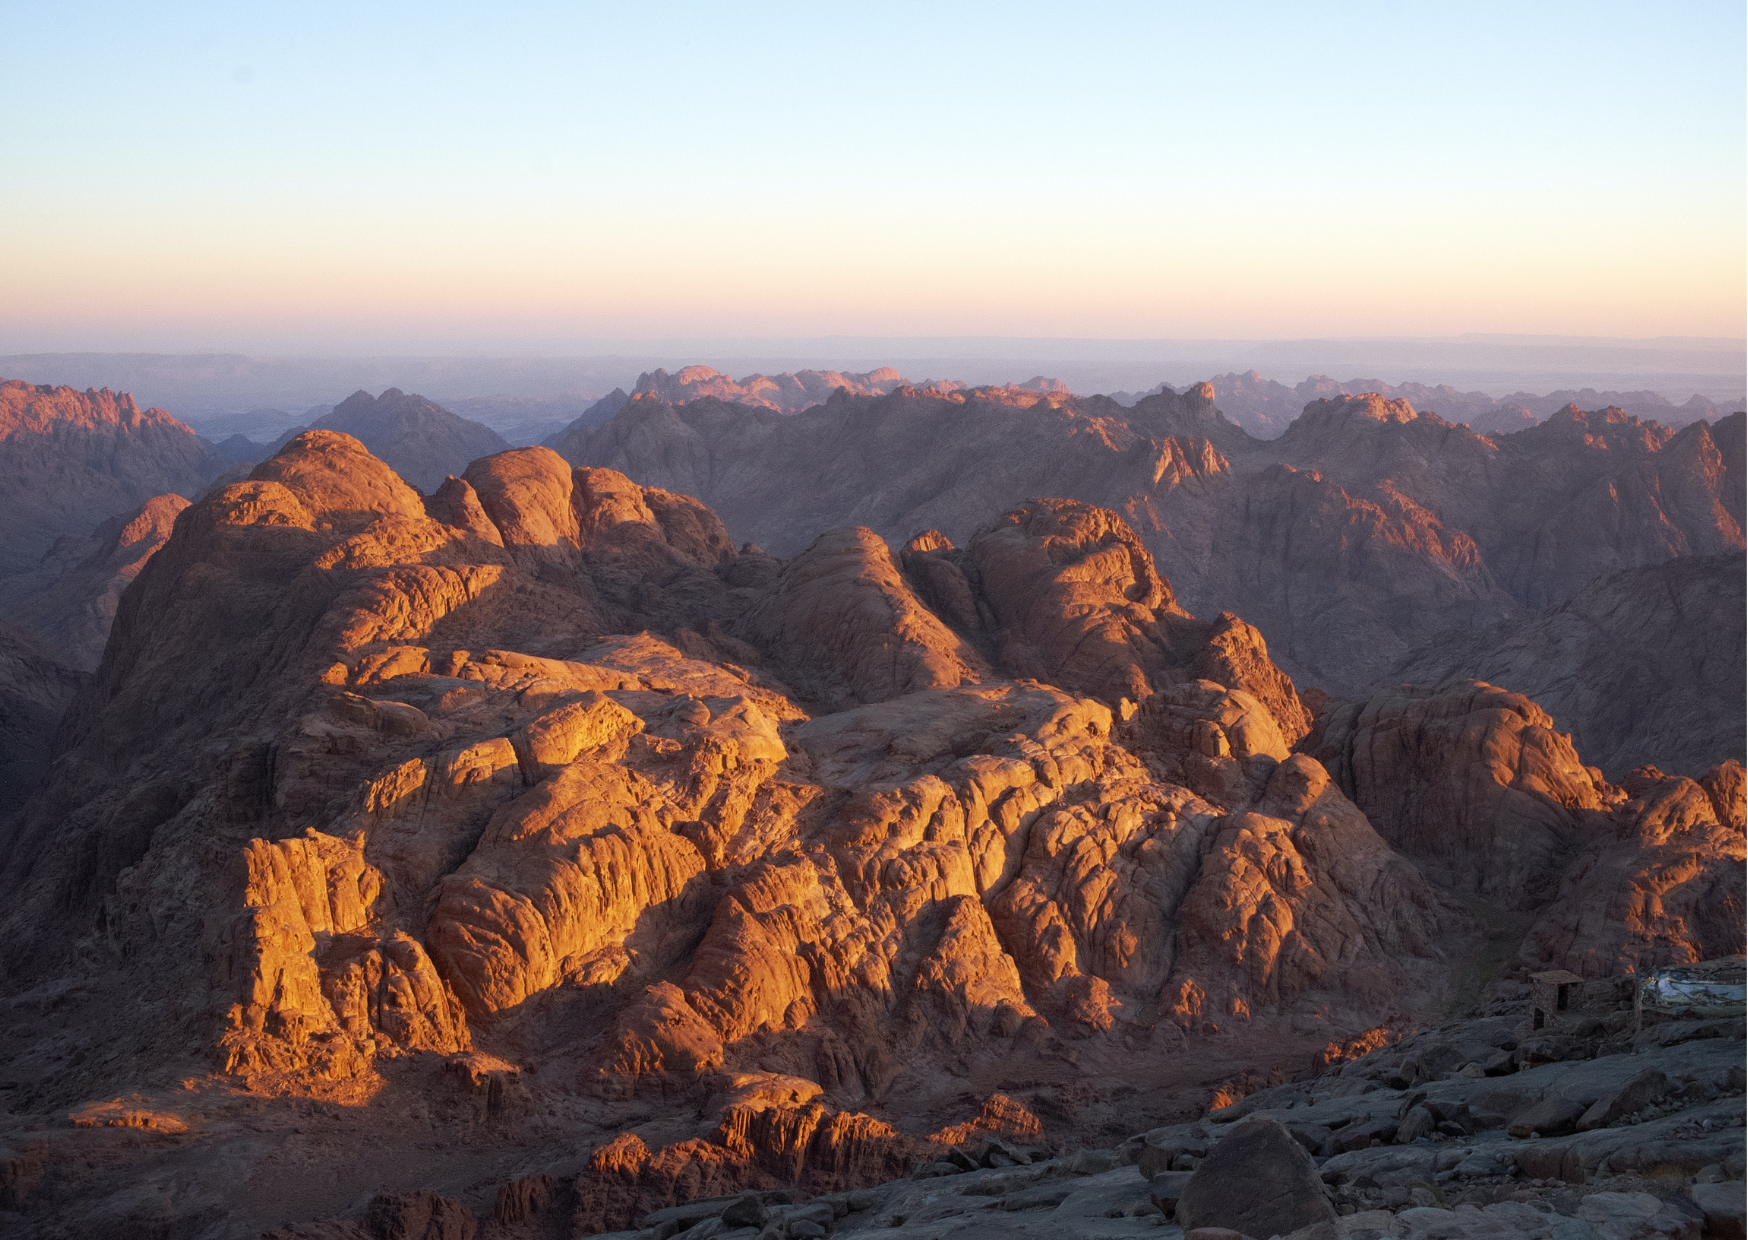 Sinai